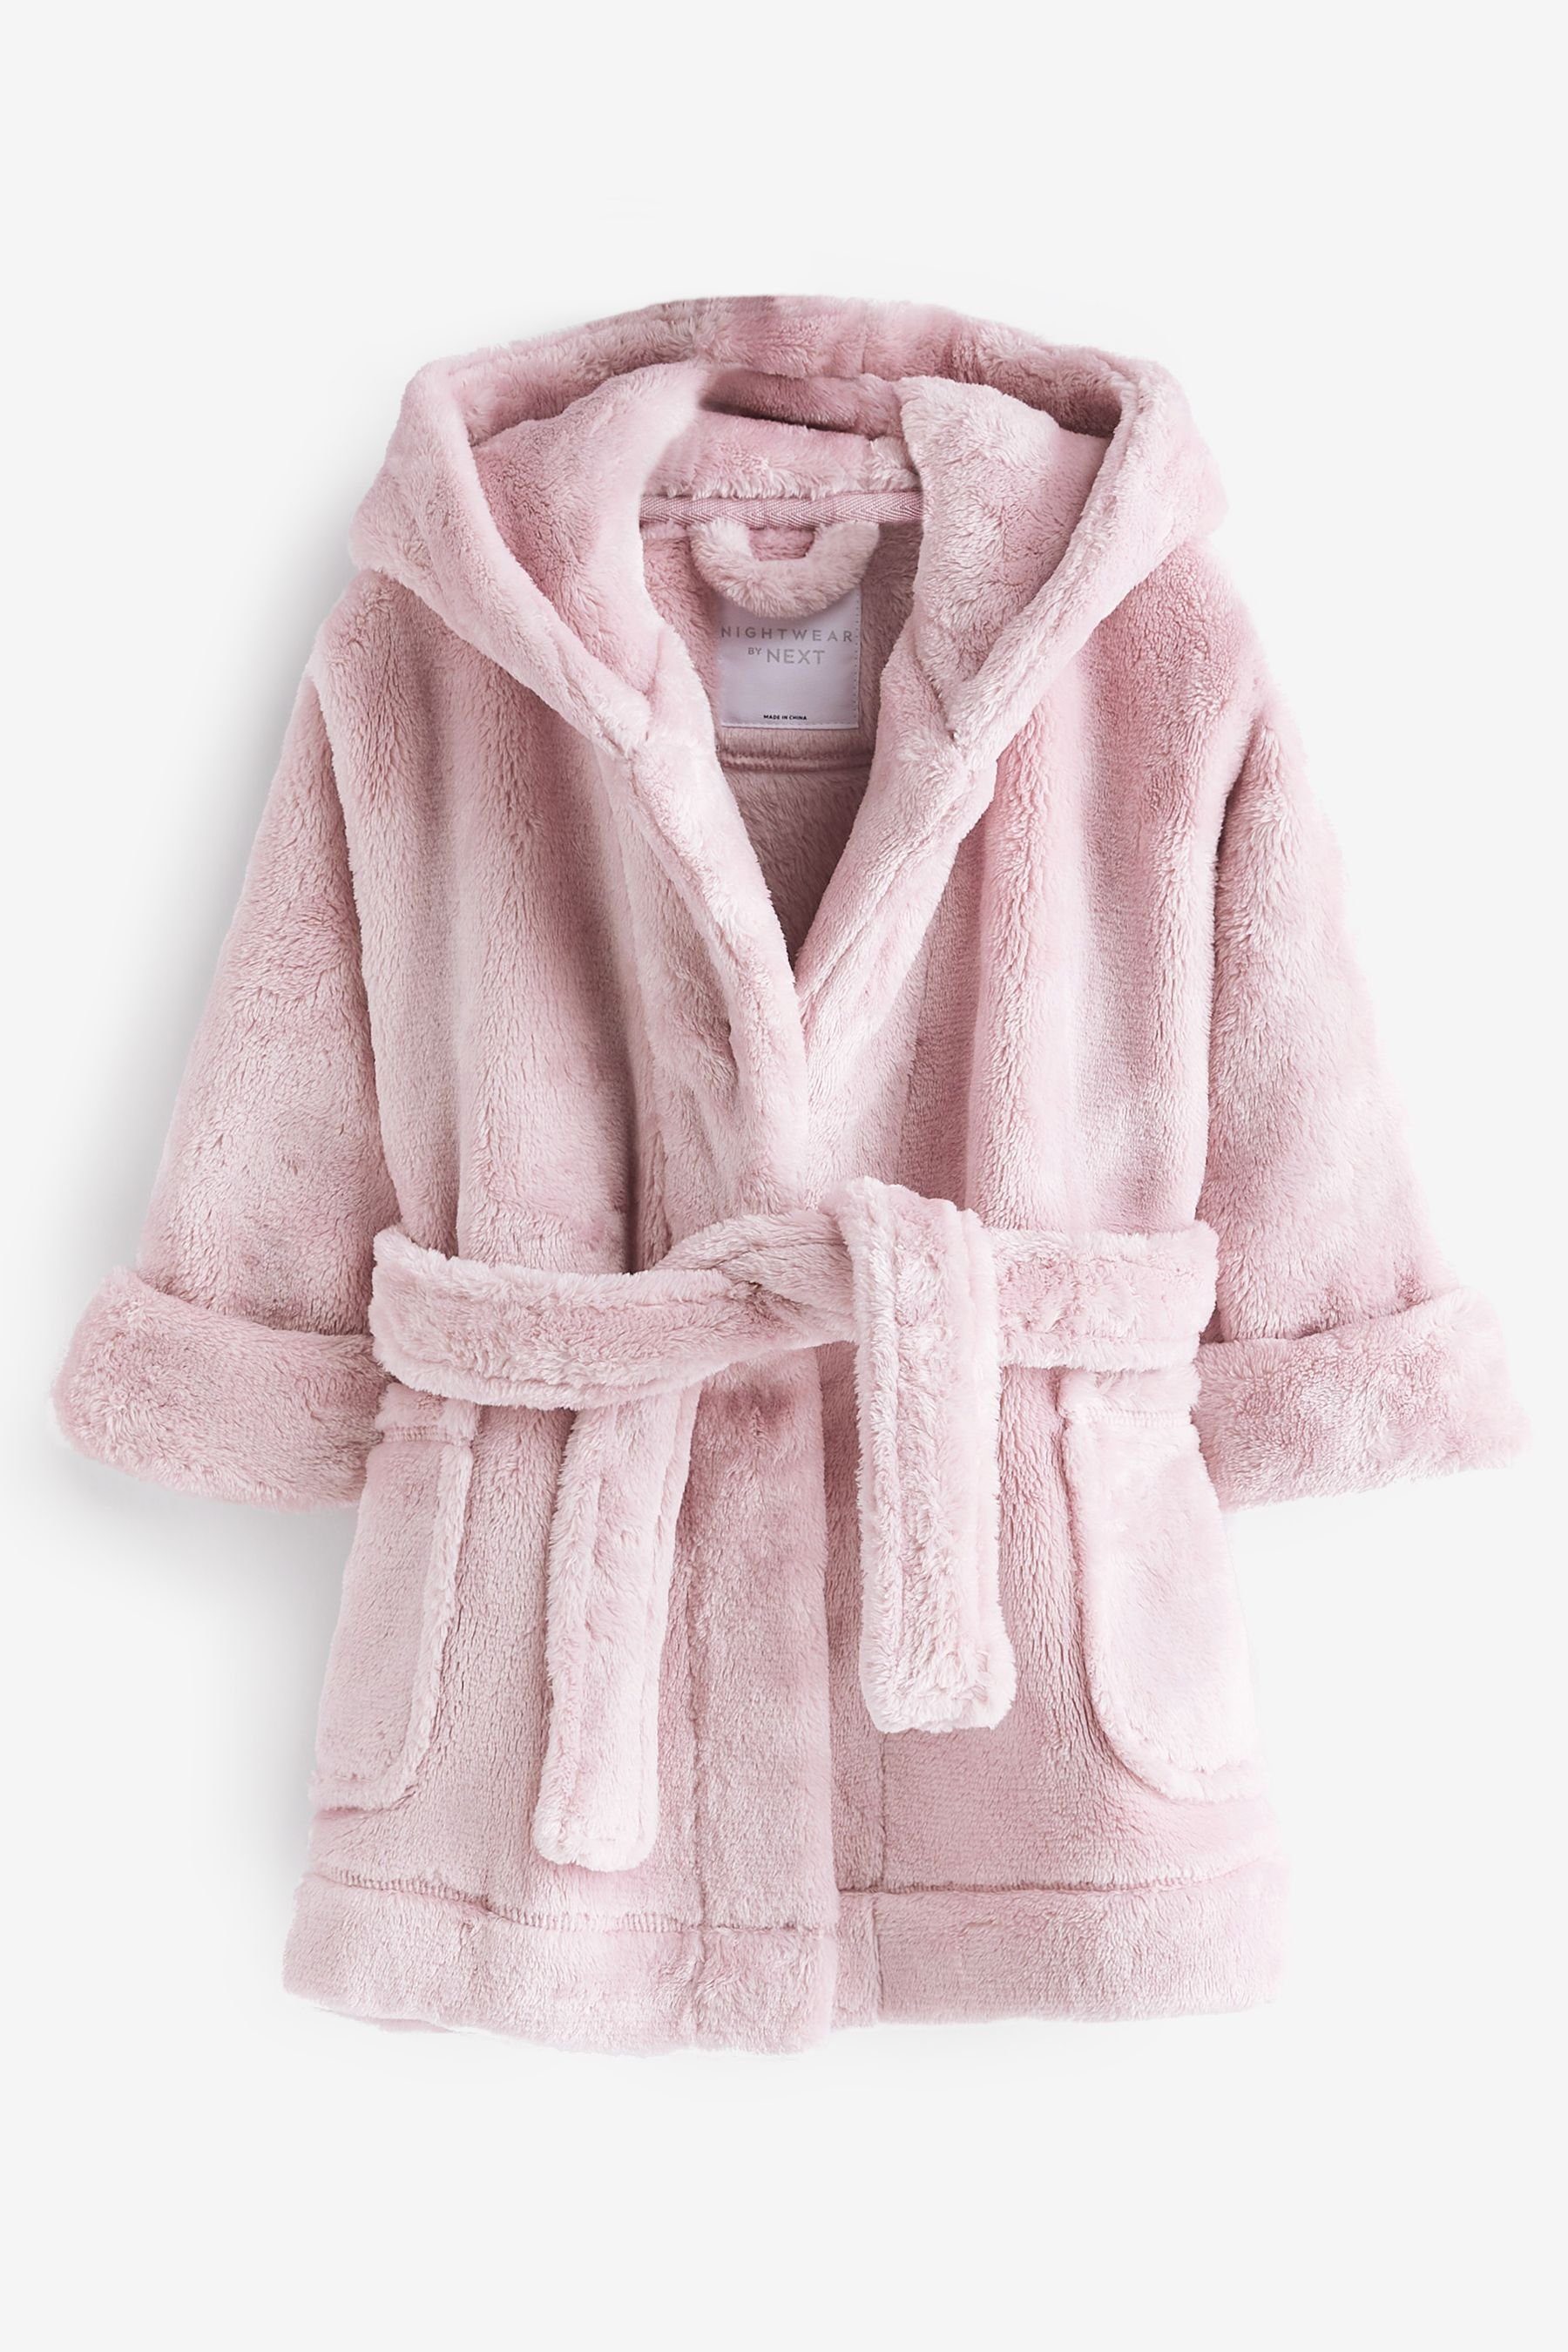 Weicher Pink Fleece-Morgenmantel, Kinderbademantel Polyester Next